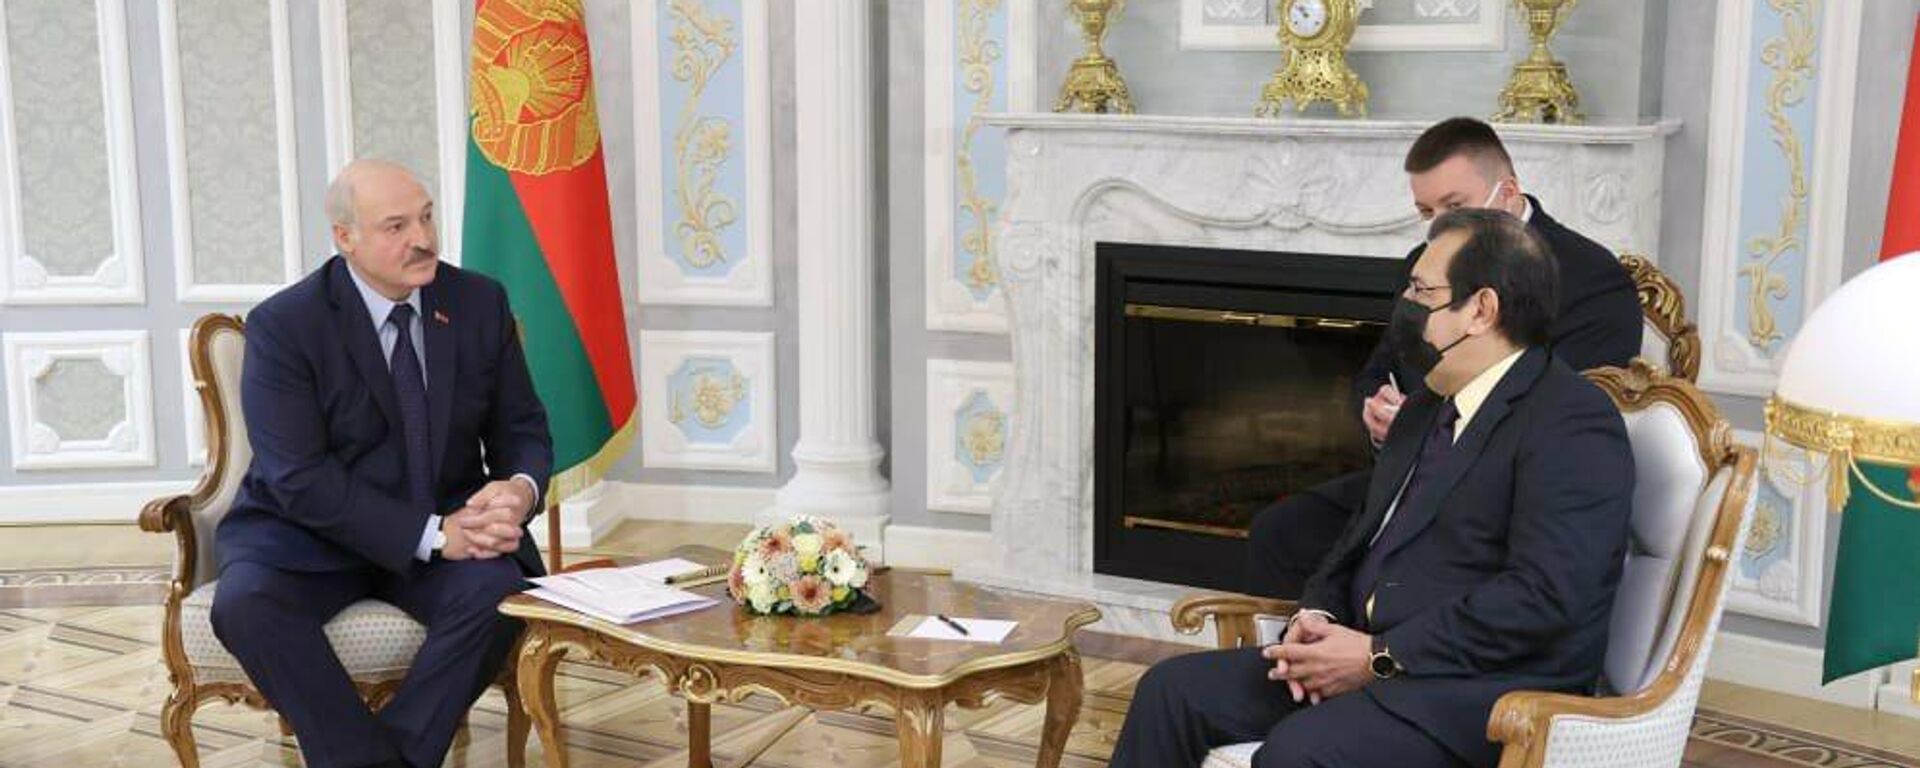 El presidente de Bielorrusia, Aleksandr Lukashenko, junto al embajador y enviado especial del Gobierno de Venezuela, Adán Chávez  - Sputnik Mundo, 1920, 07.10.2021